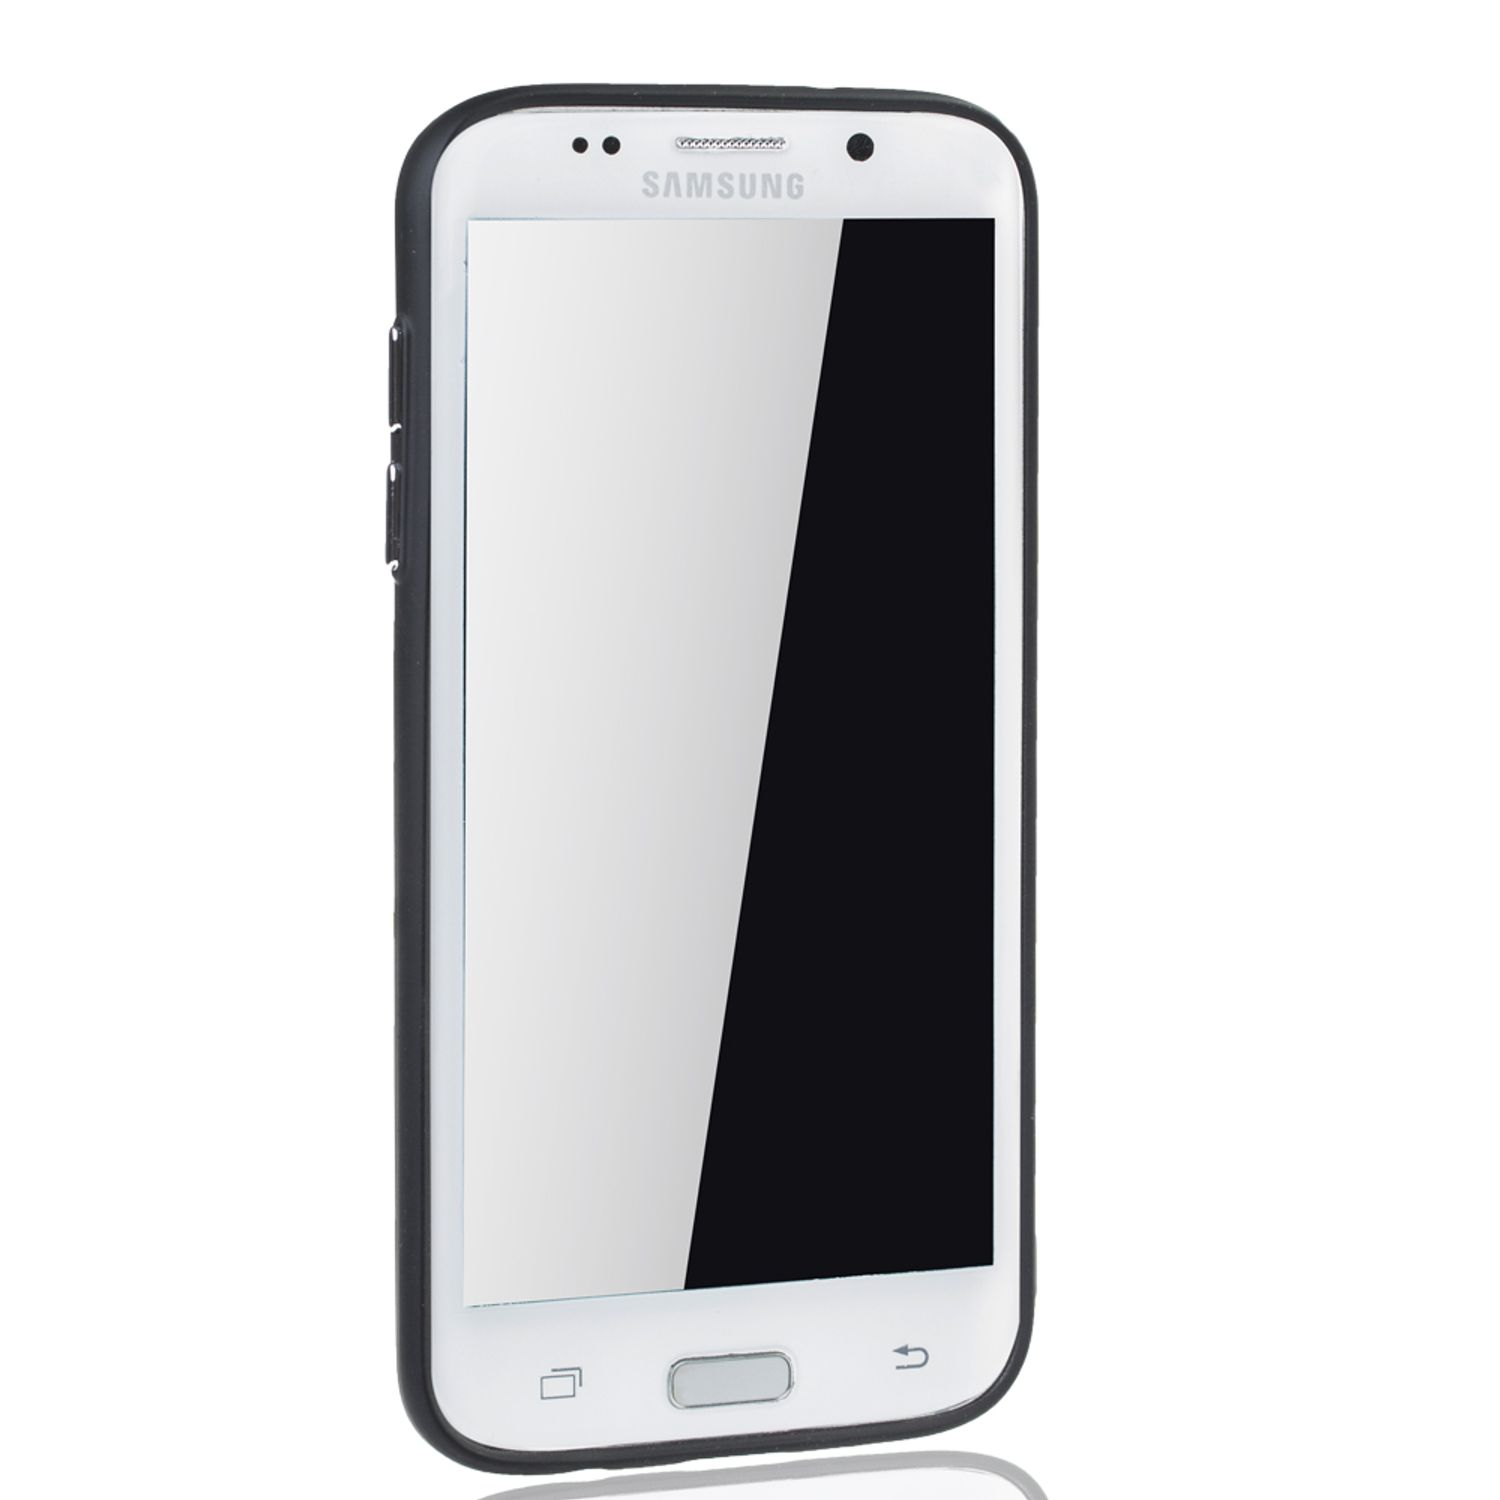 Samsung, DESIGN Schutzhülle, S7 KÖNIG Galaxy Silber Edge, Backcover,